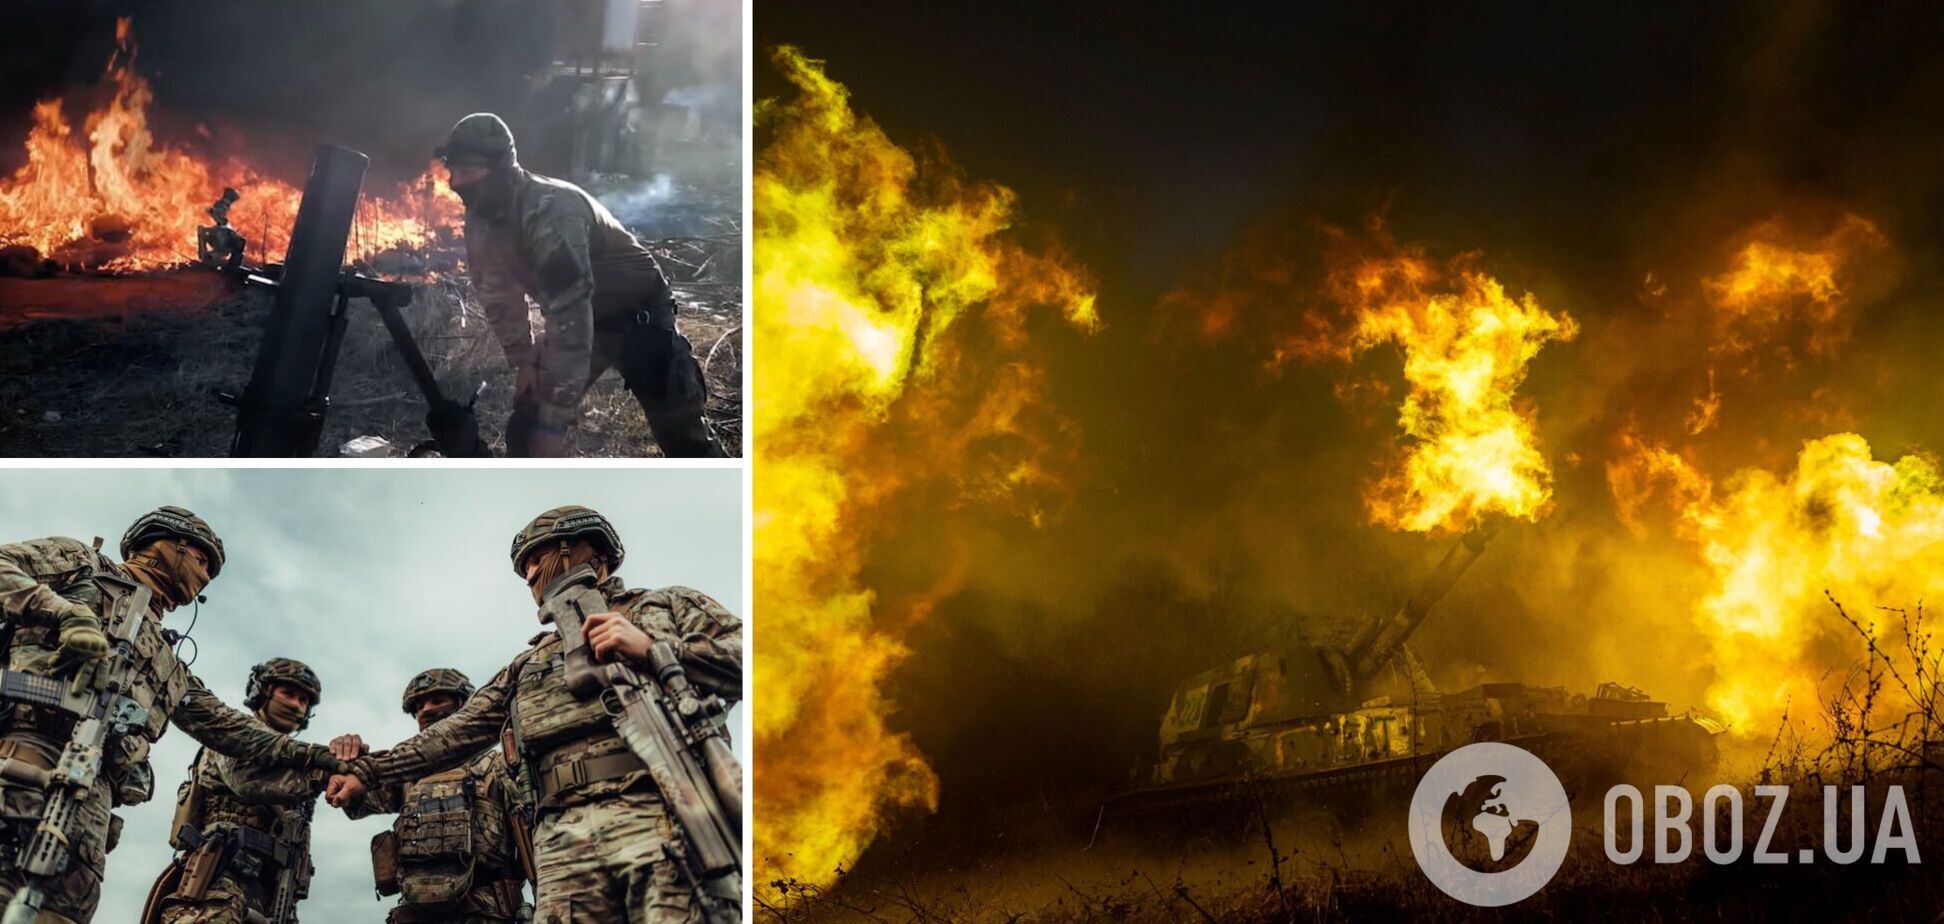 Українські воїни показали 'бойовик' про успішно виконане завдання на фронті. Відео